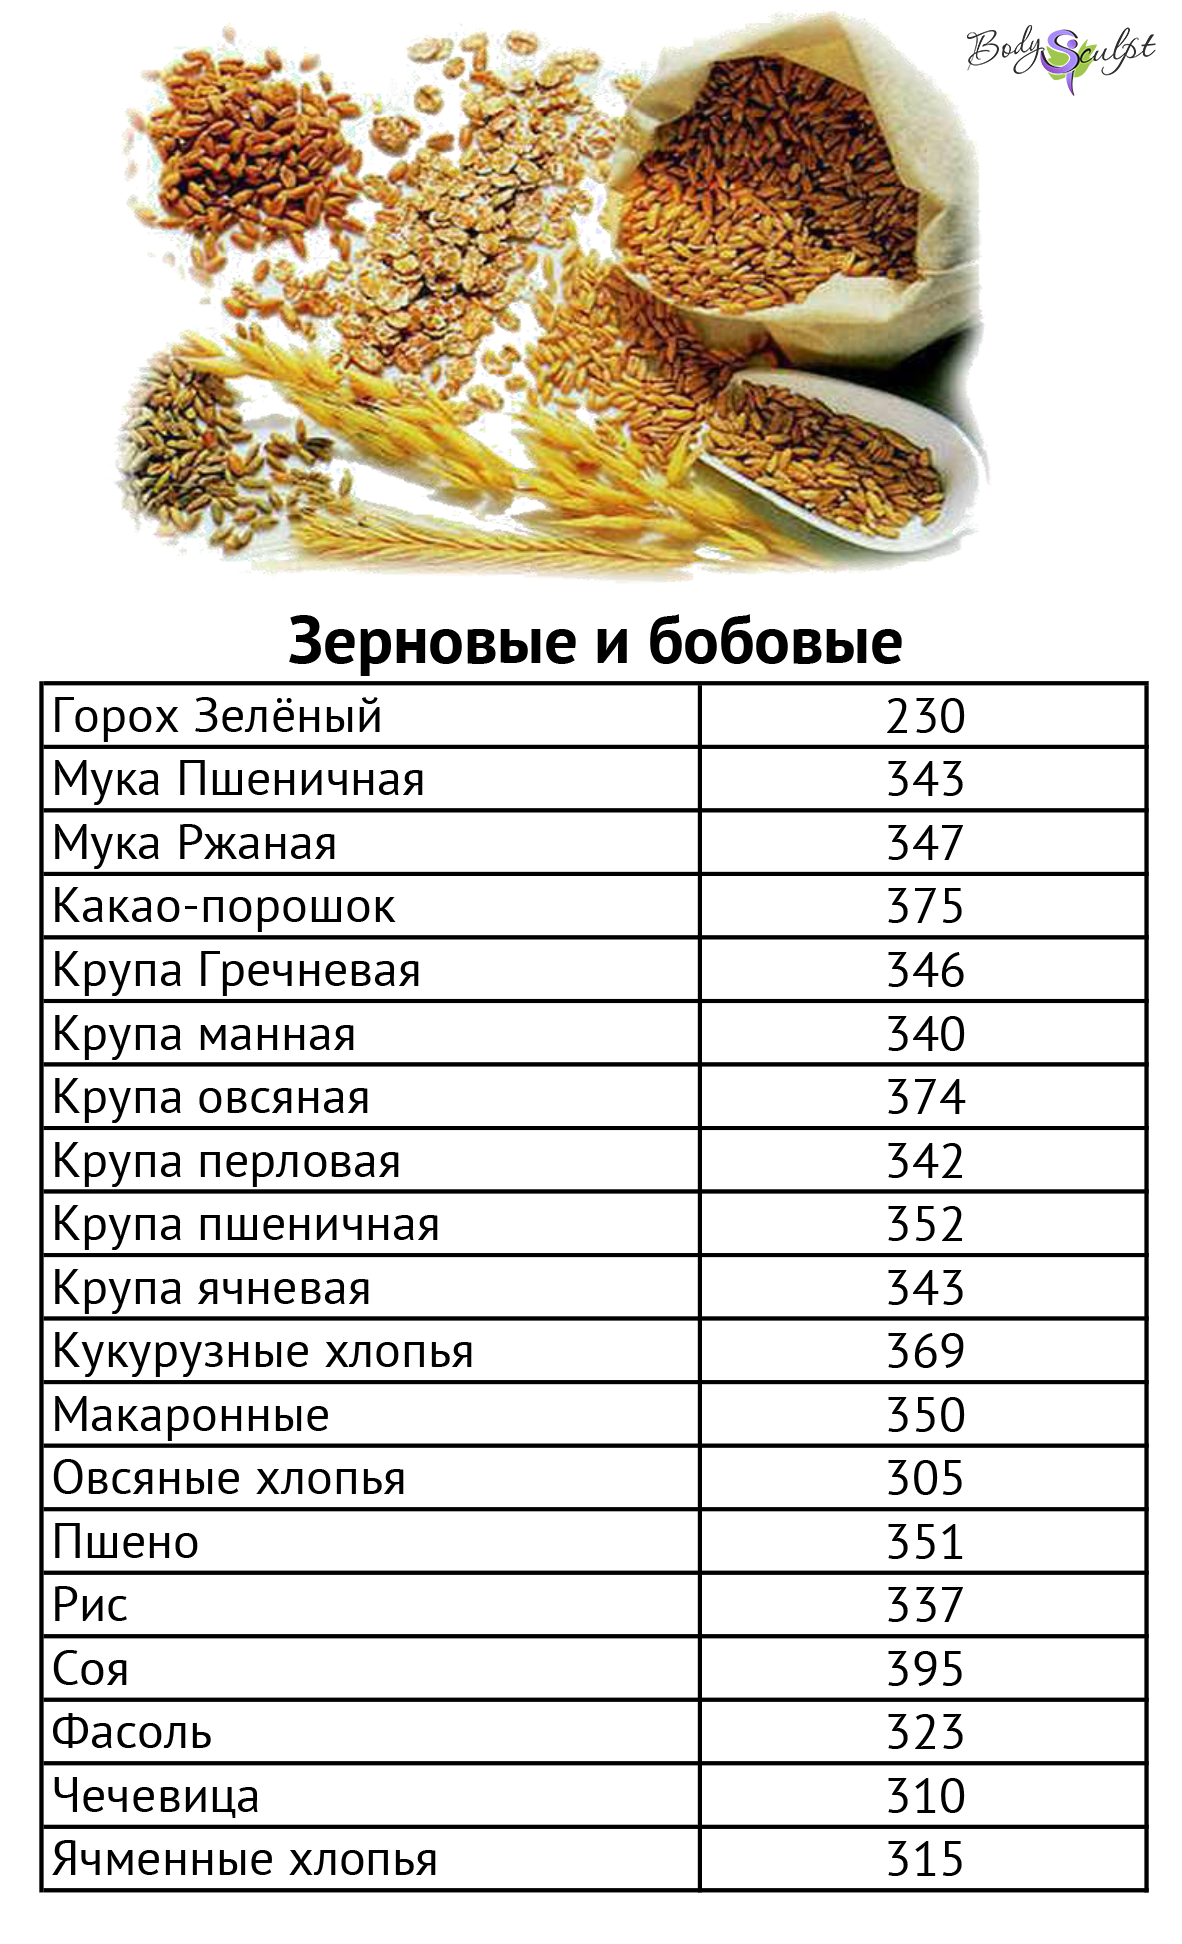 Калорийность продуктов на 100 грамм (таблица)